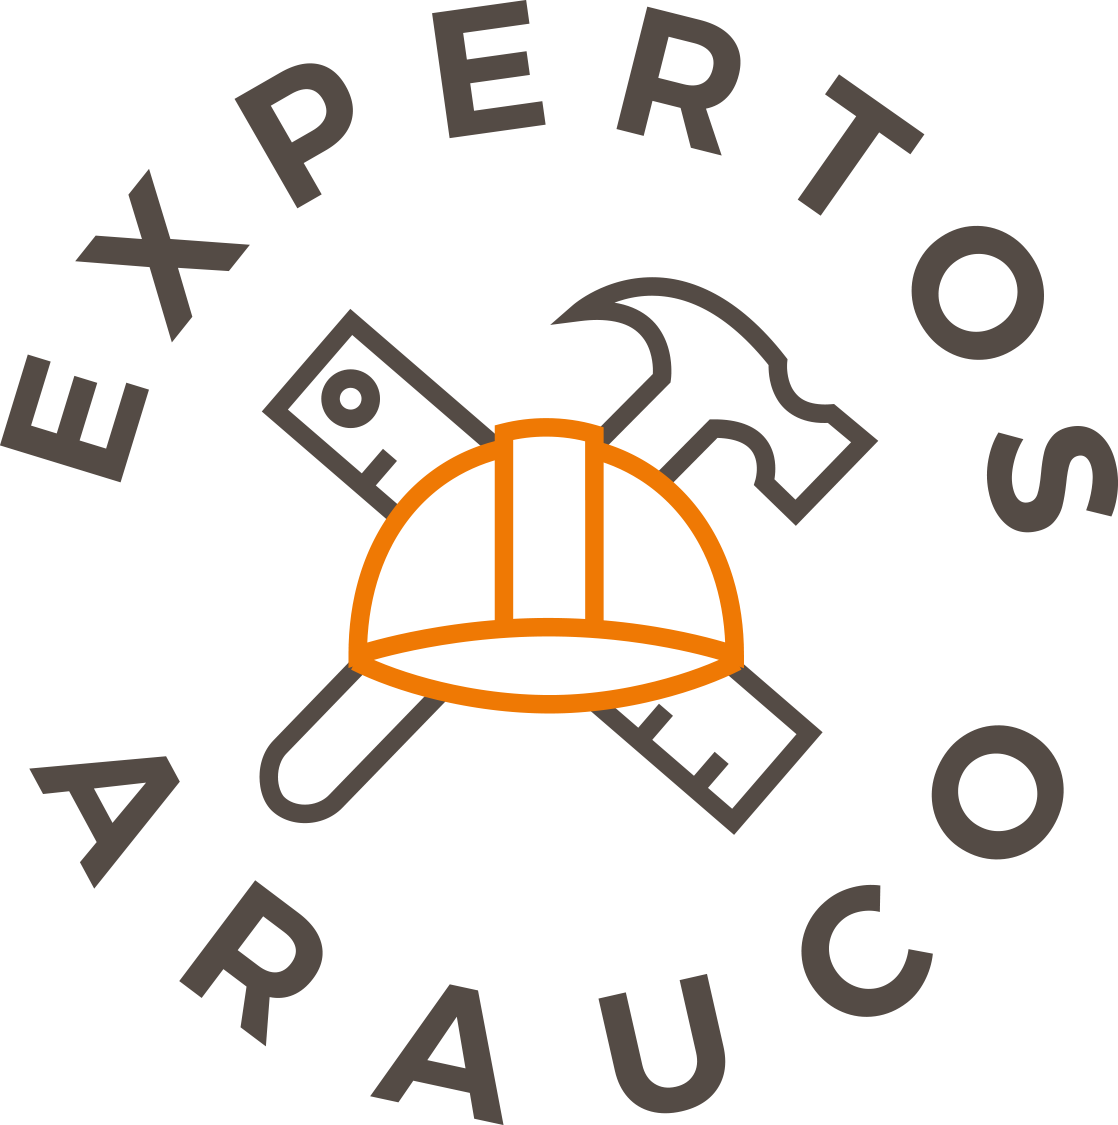 Picture of Expertos Arauco